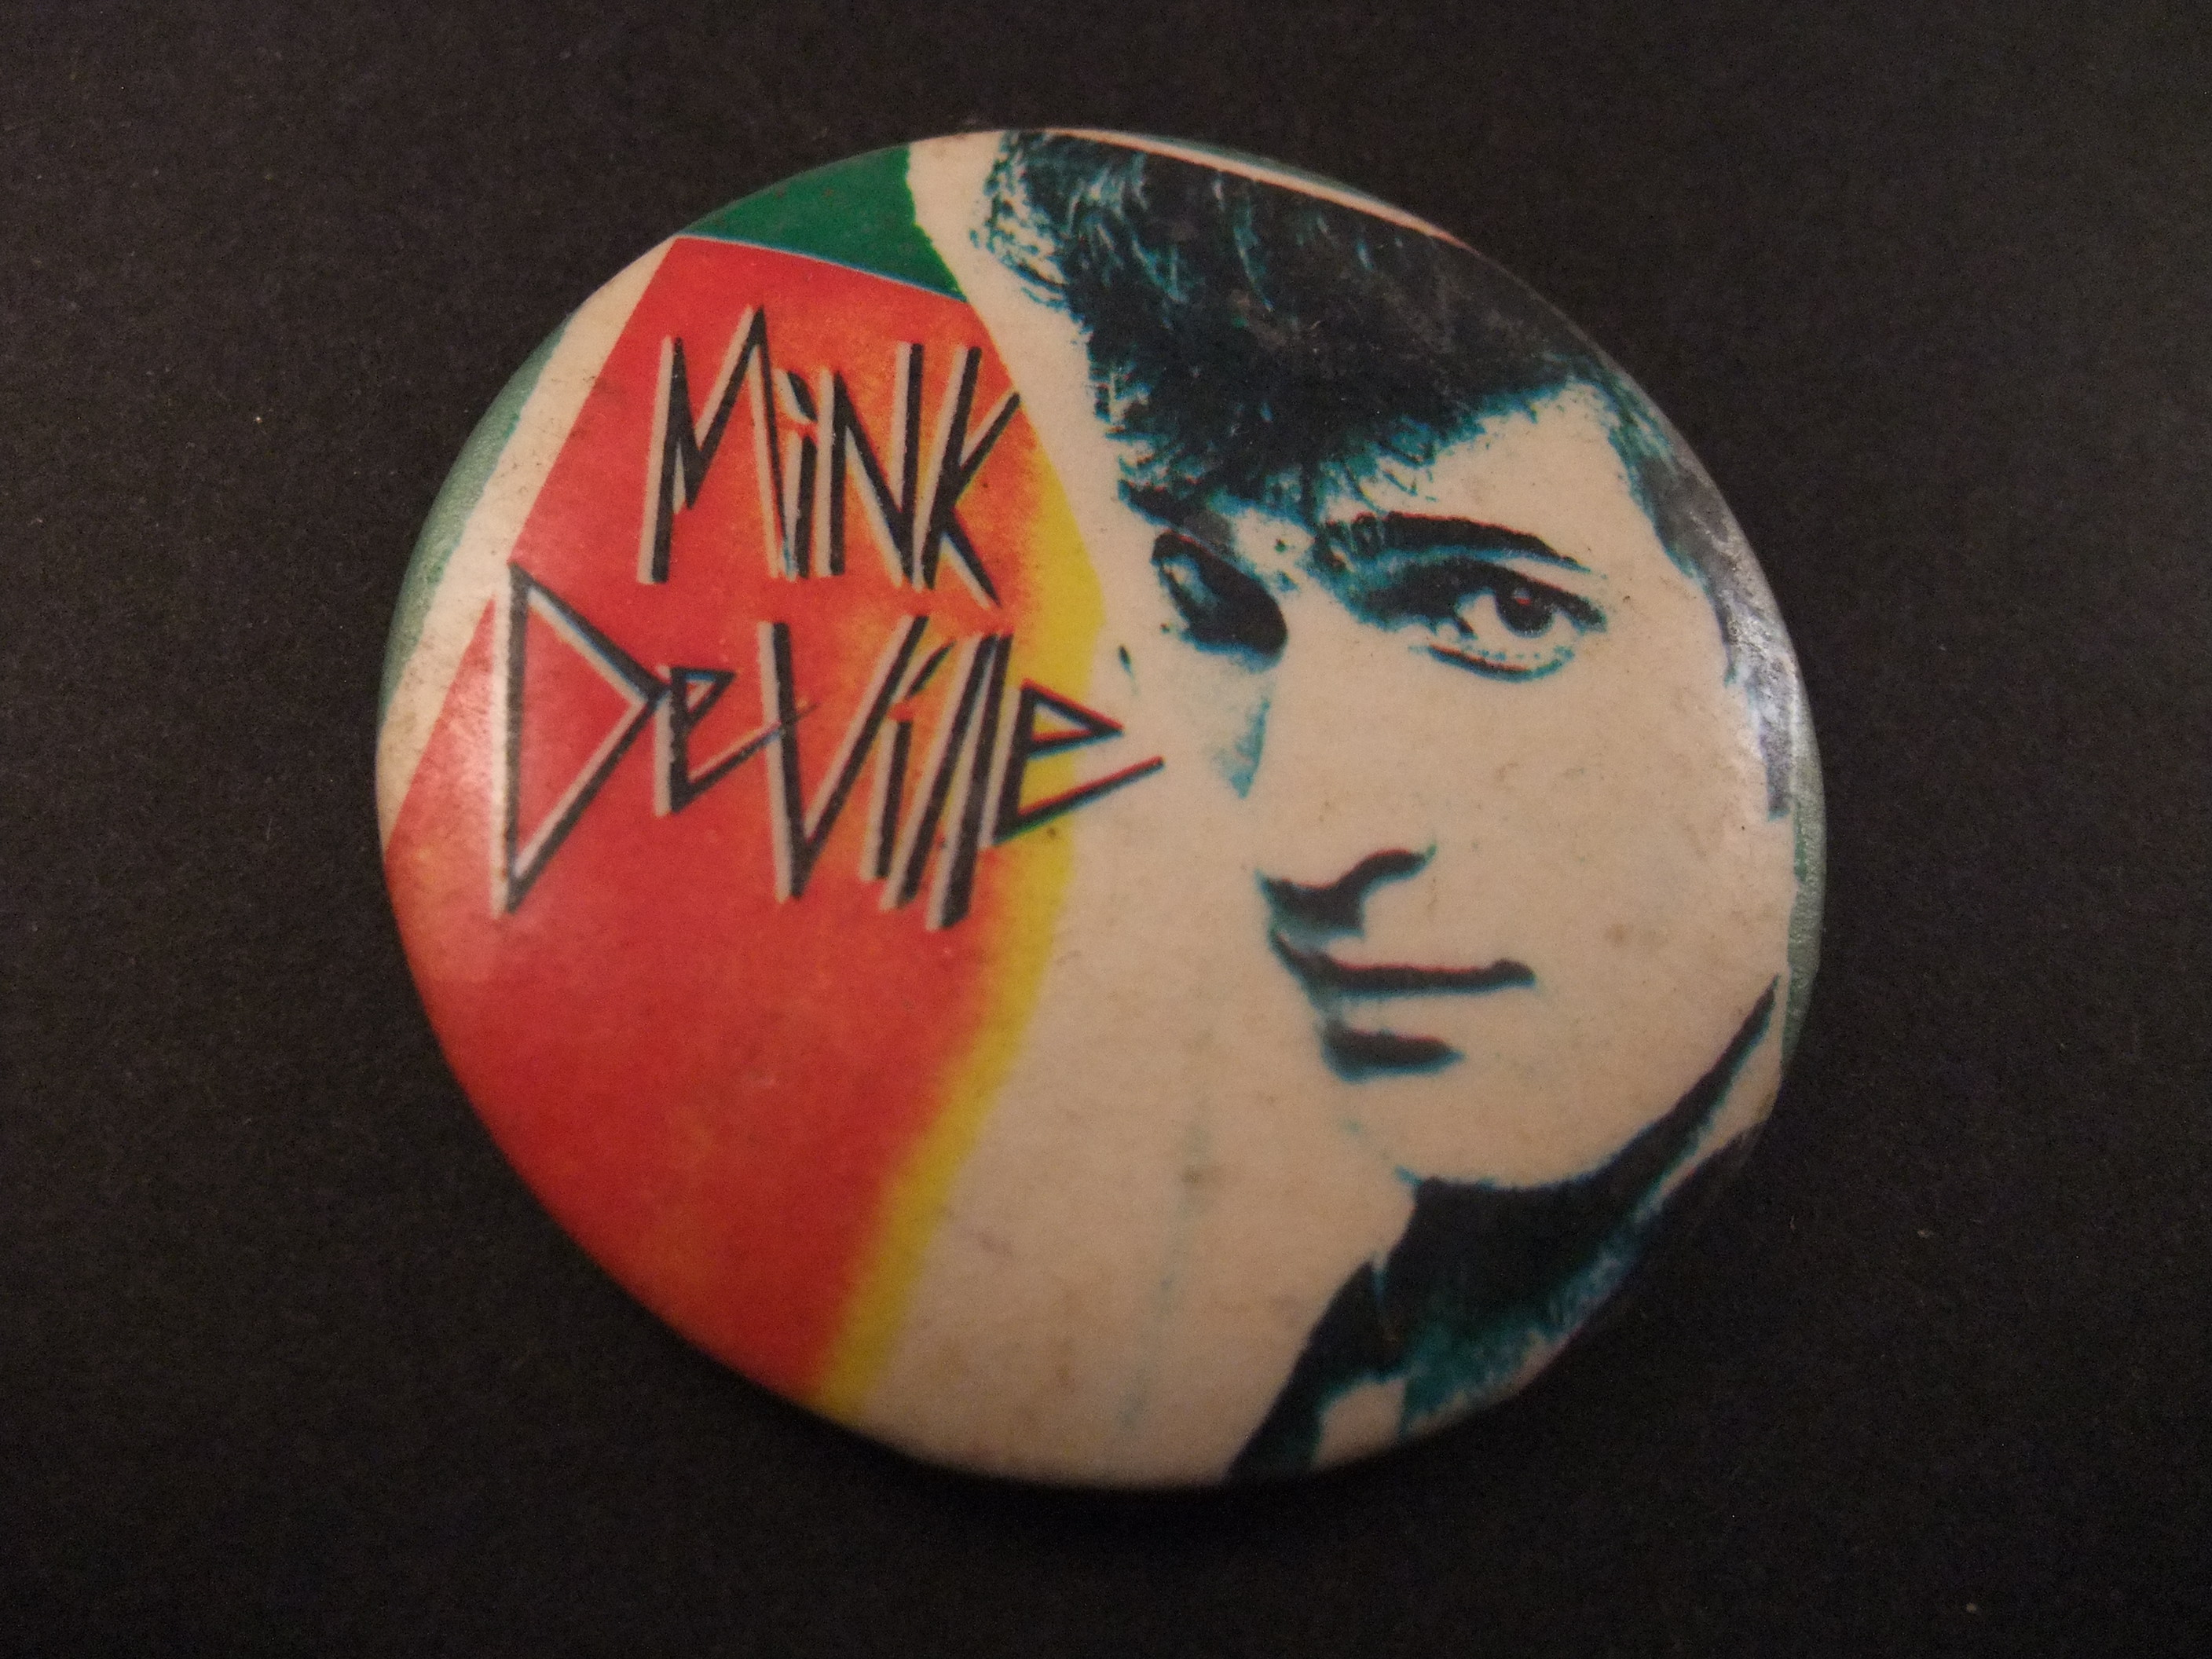 Mink DeVille punkband hit Spanish stroll.jaren 70